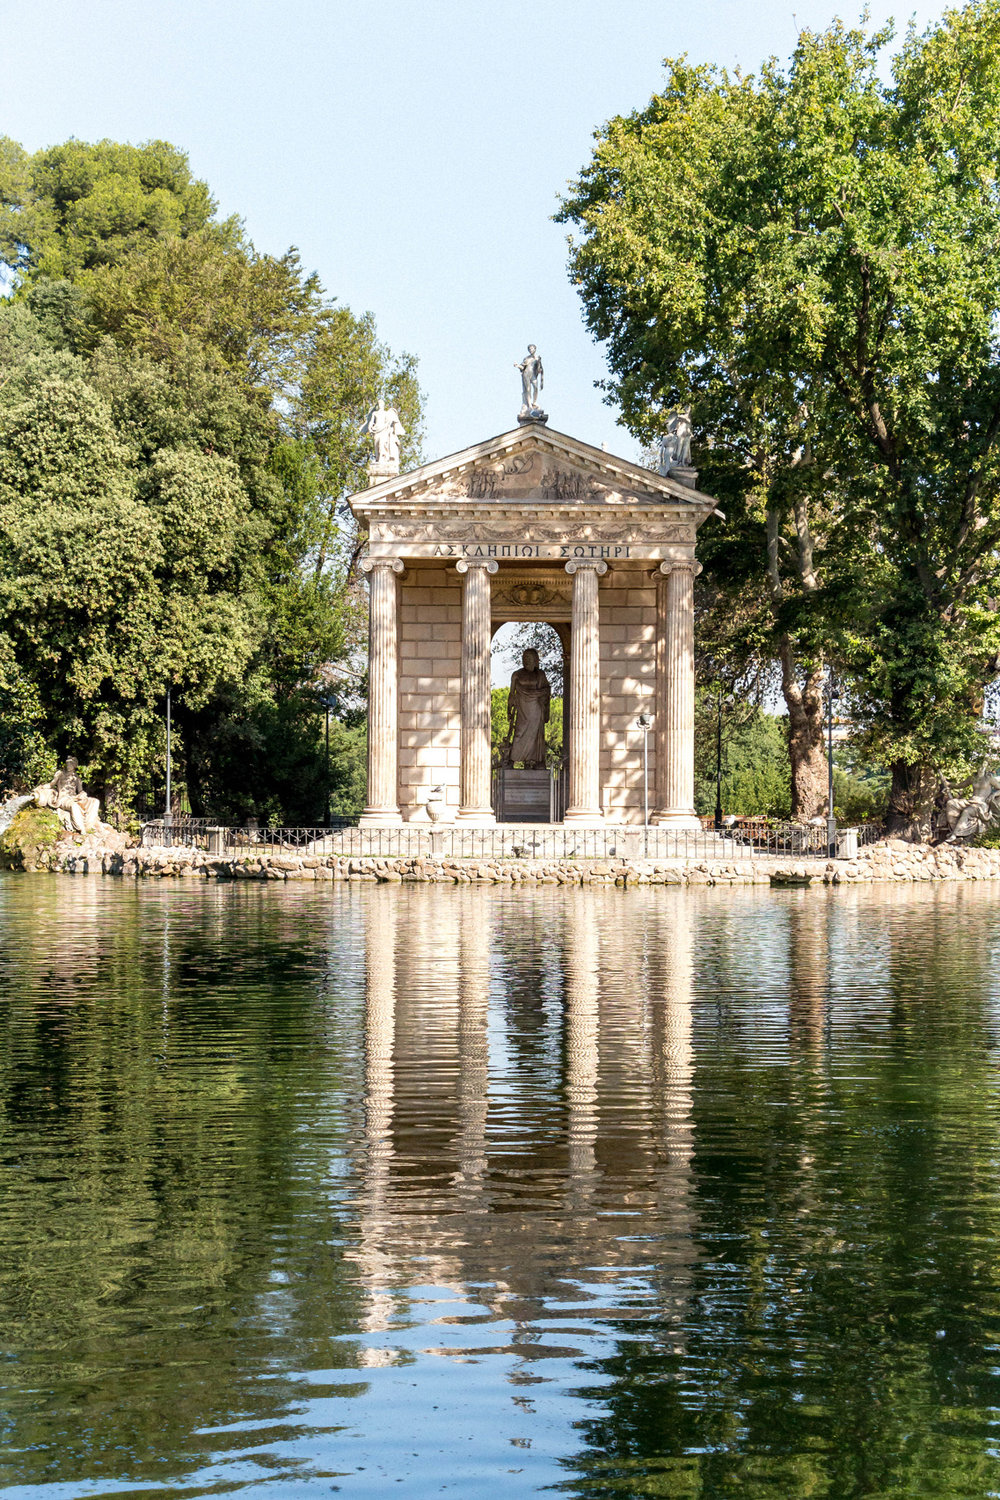 Villa Borghese gardens, Rome